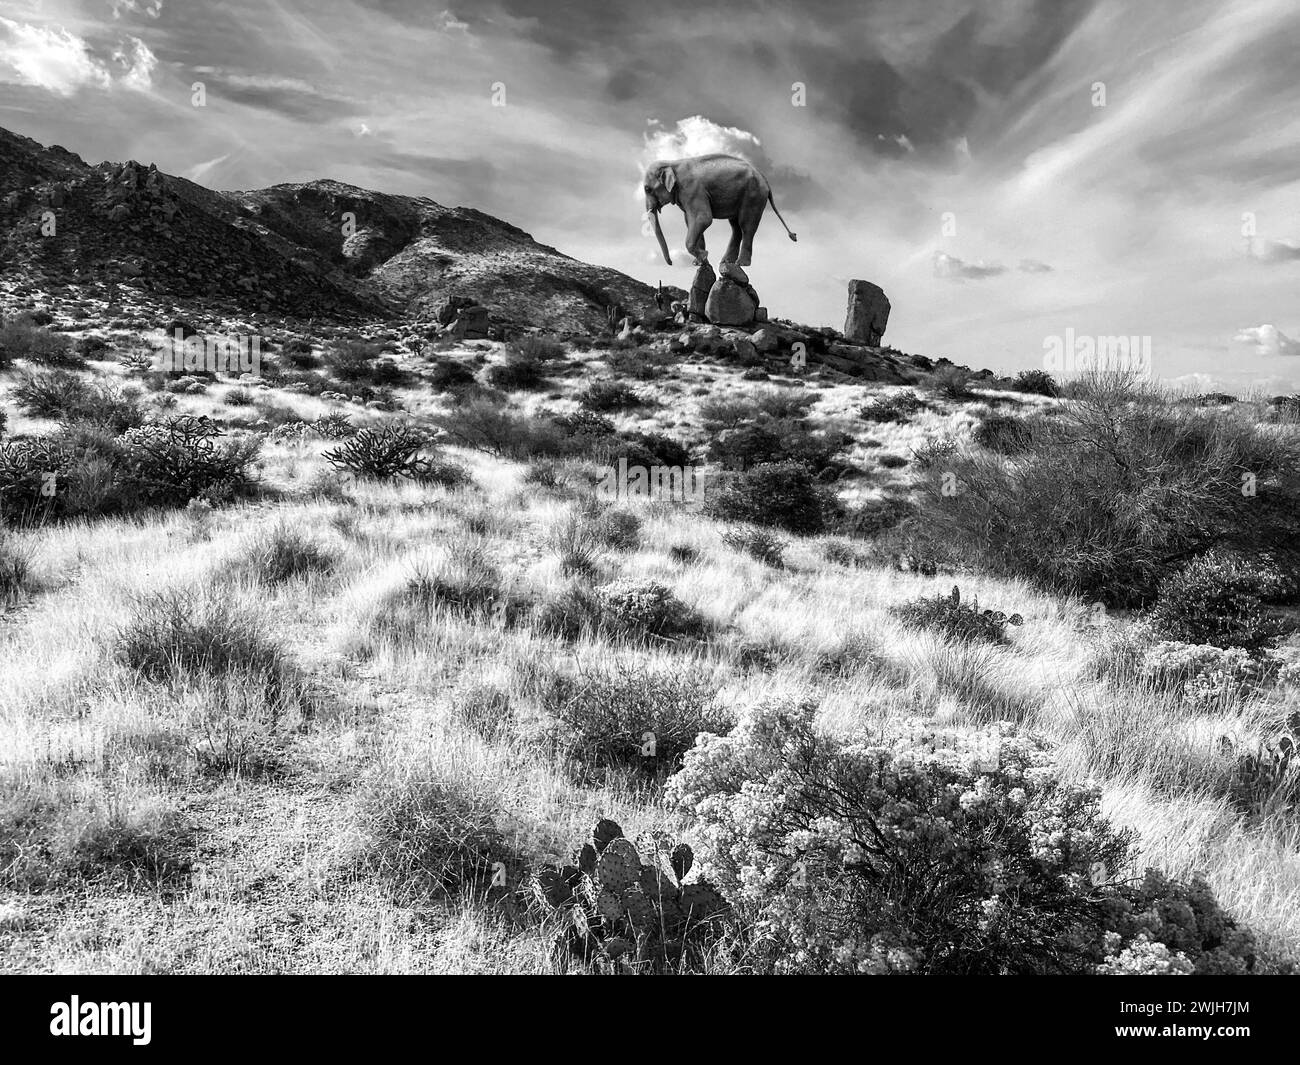 Création numérique d'un éléphant errant au McDowell Sonoran Conservancy Tom's Thumb Trailhead à Scottsdale, Arizona Banque D'Images